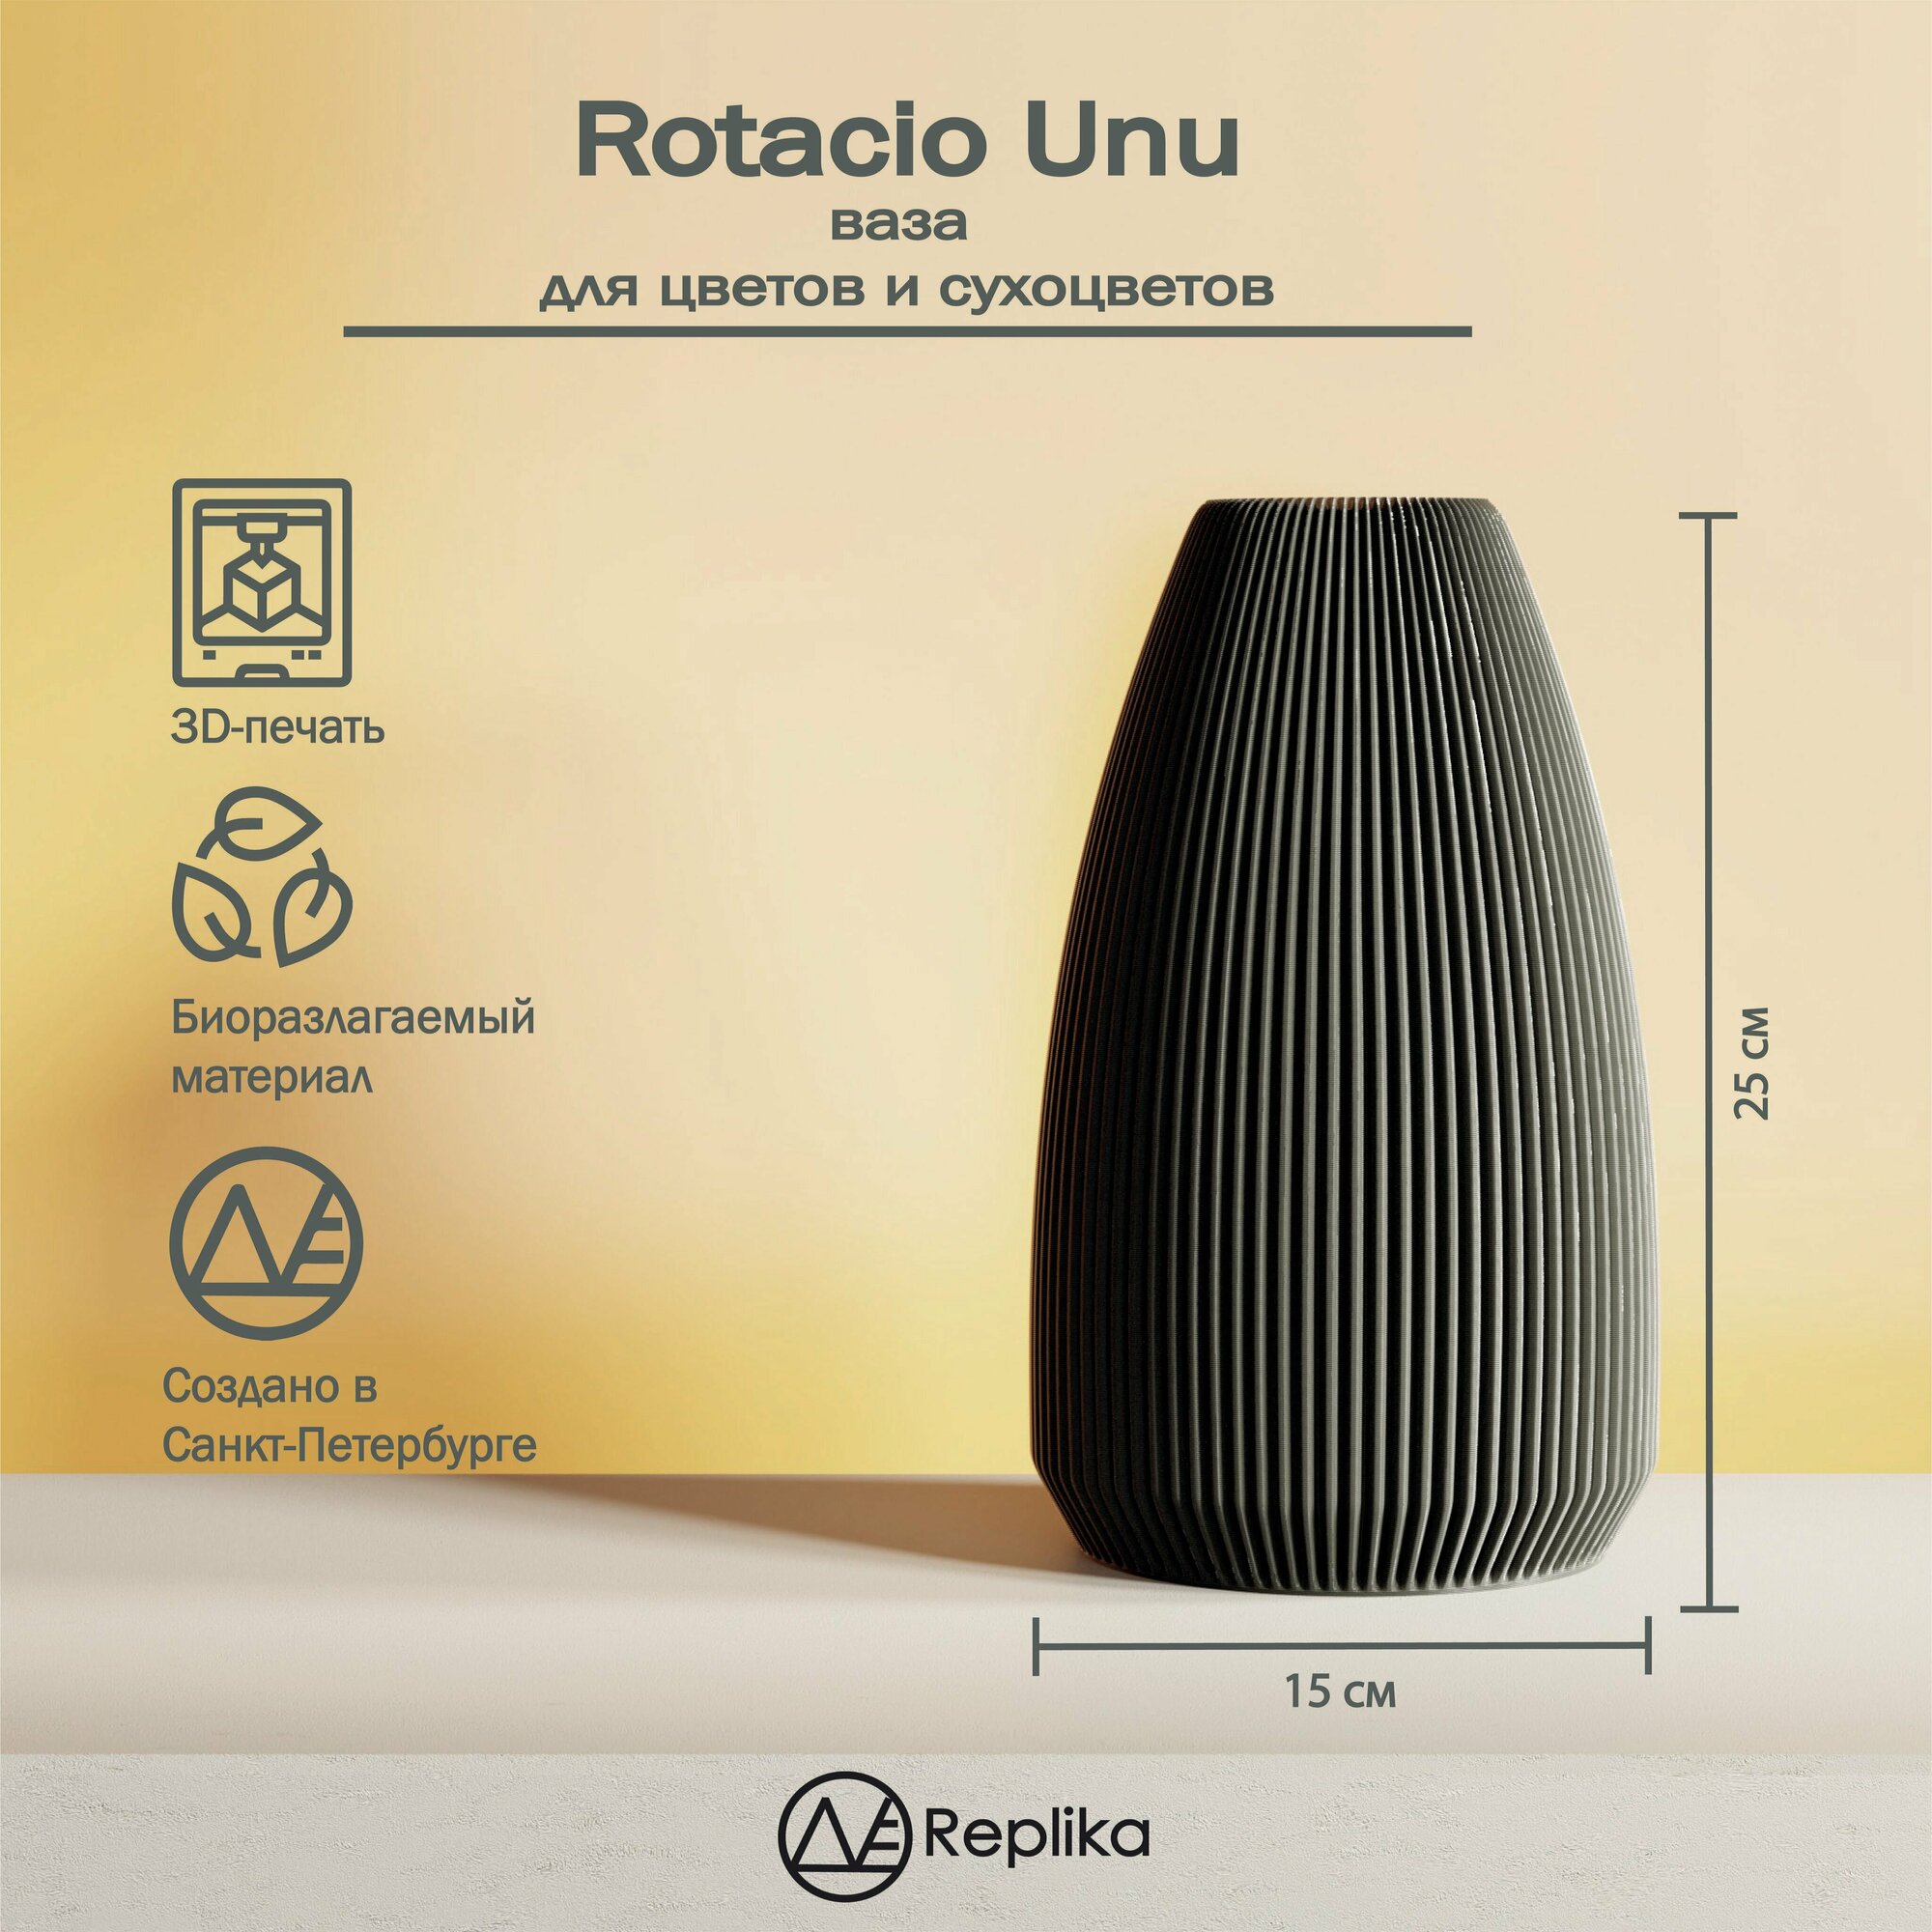 Rotacio Unu Декоративная 3д печатная ваза интерьерная для цветов и сухоцветов.